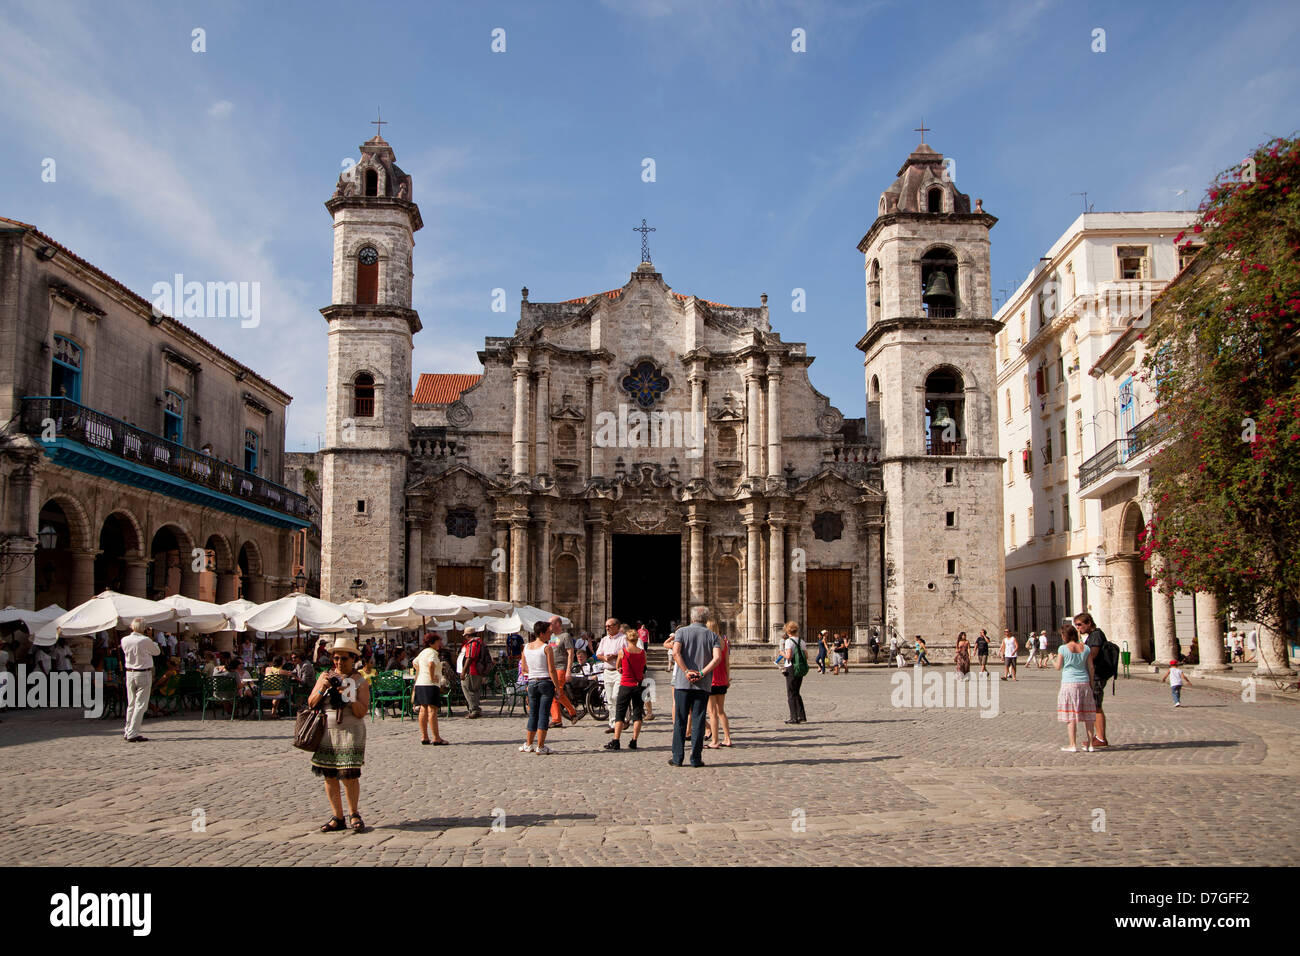 Il cathédrale Catedral de San Cristobal sur la place Plaza de la Catedral de la vieille Havane La Habana Vieja, La Havane, Cuba, Caraïbes Banque D'Images